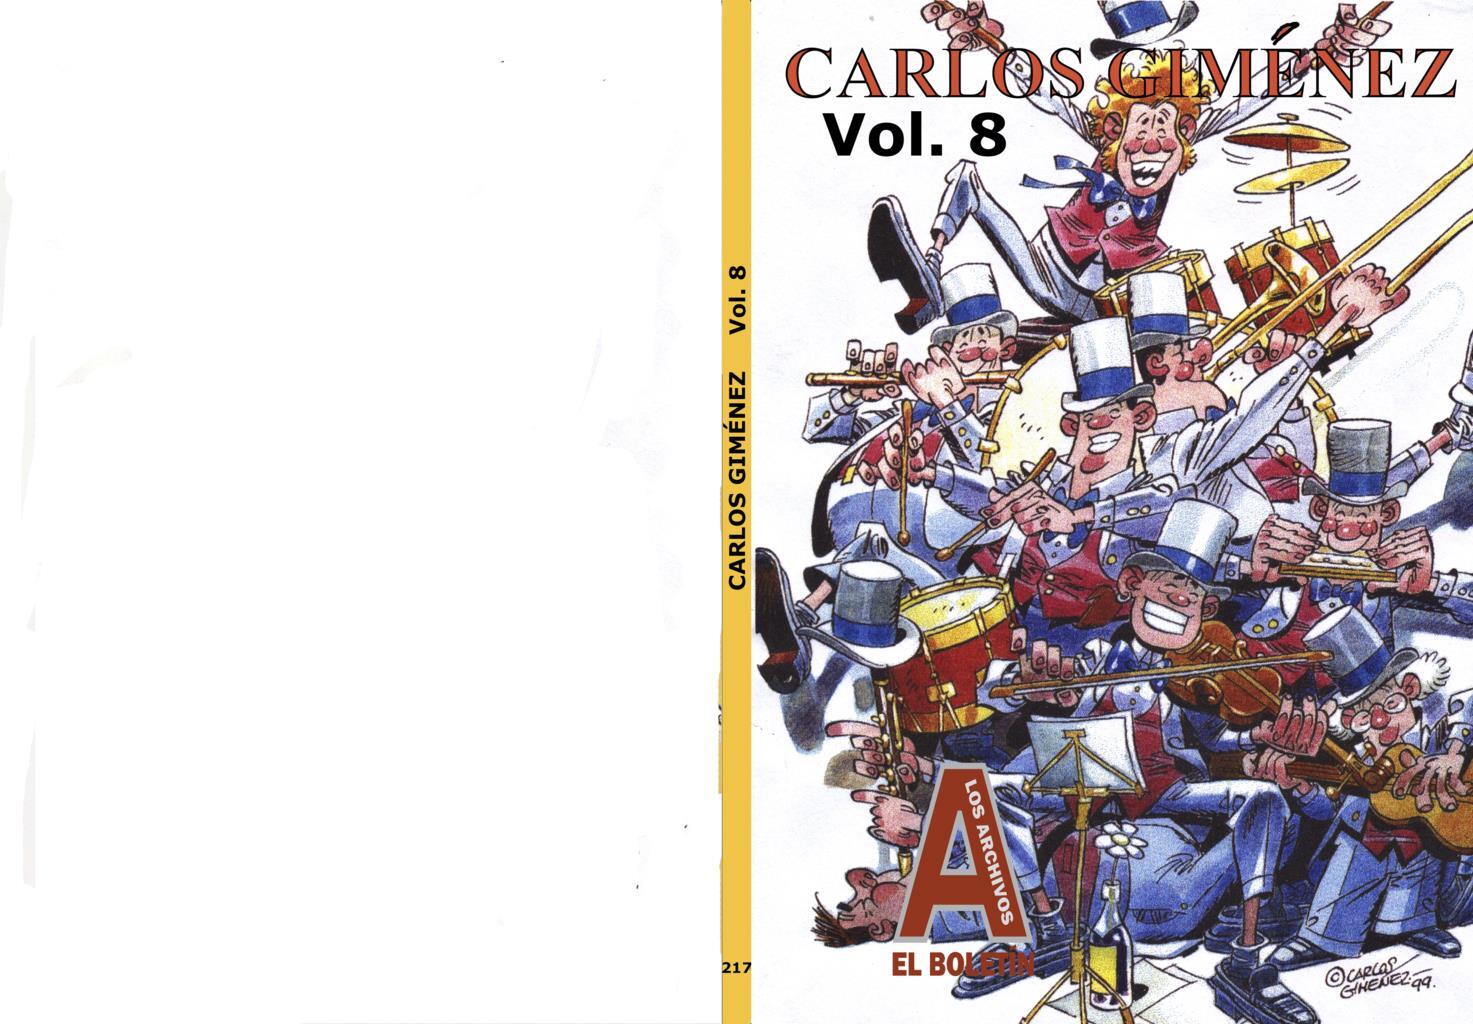 Los Archivos de El Boletin volumen 217: Carlos Gimenez volumen 08 